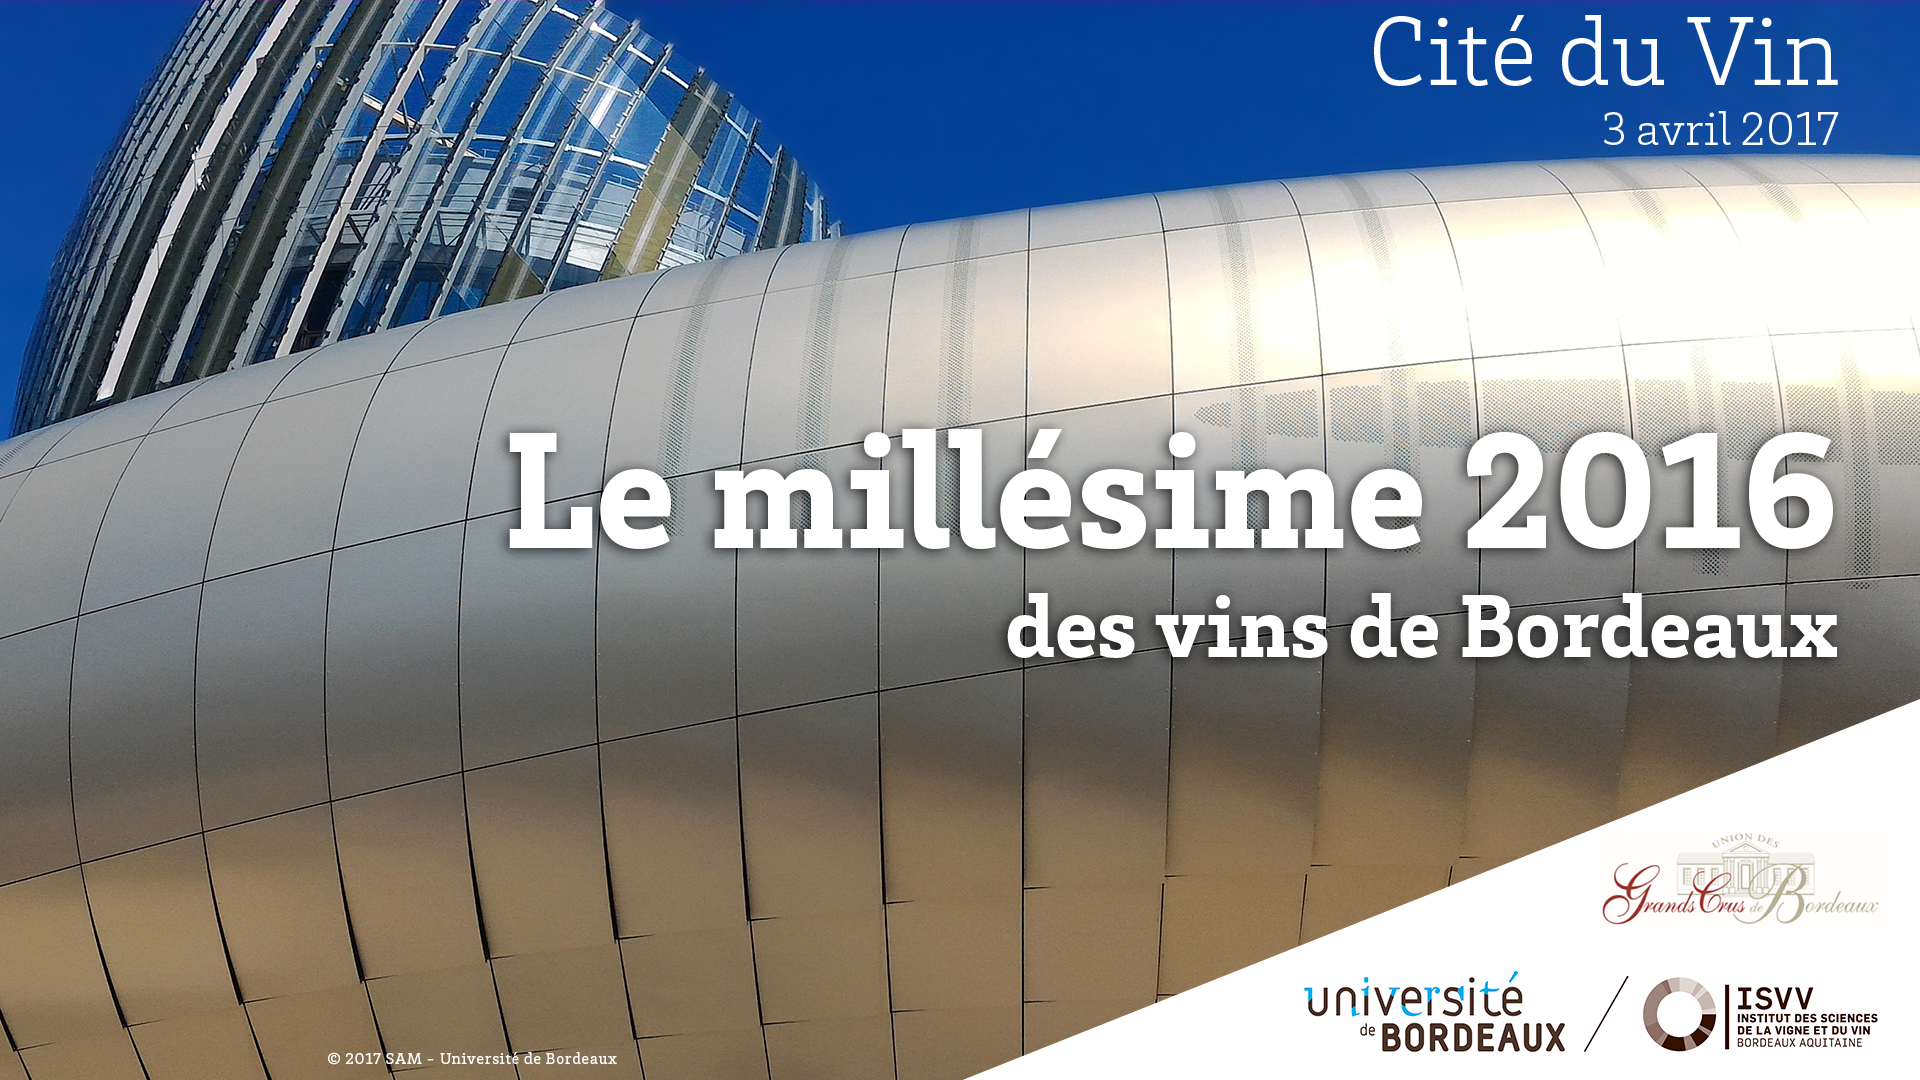 Le Millésime 2016 des vins de Bordeaux / Accueil à la Cité du Vin